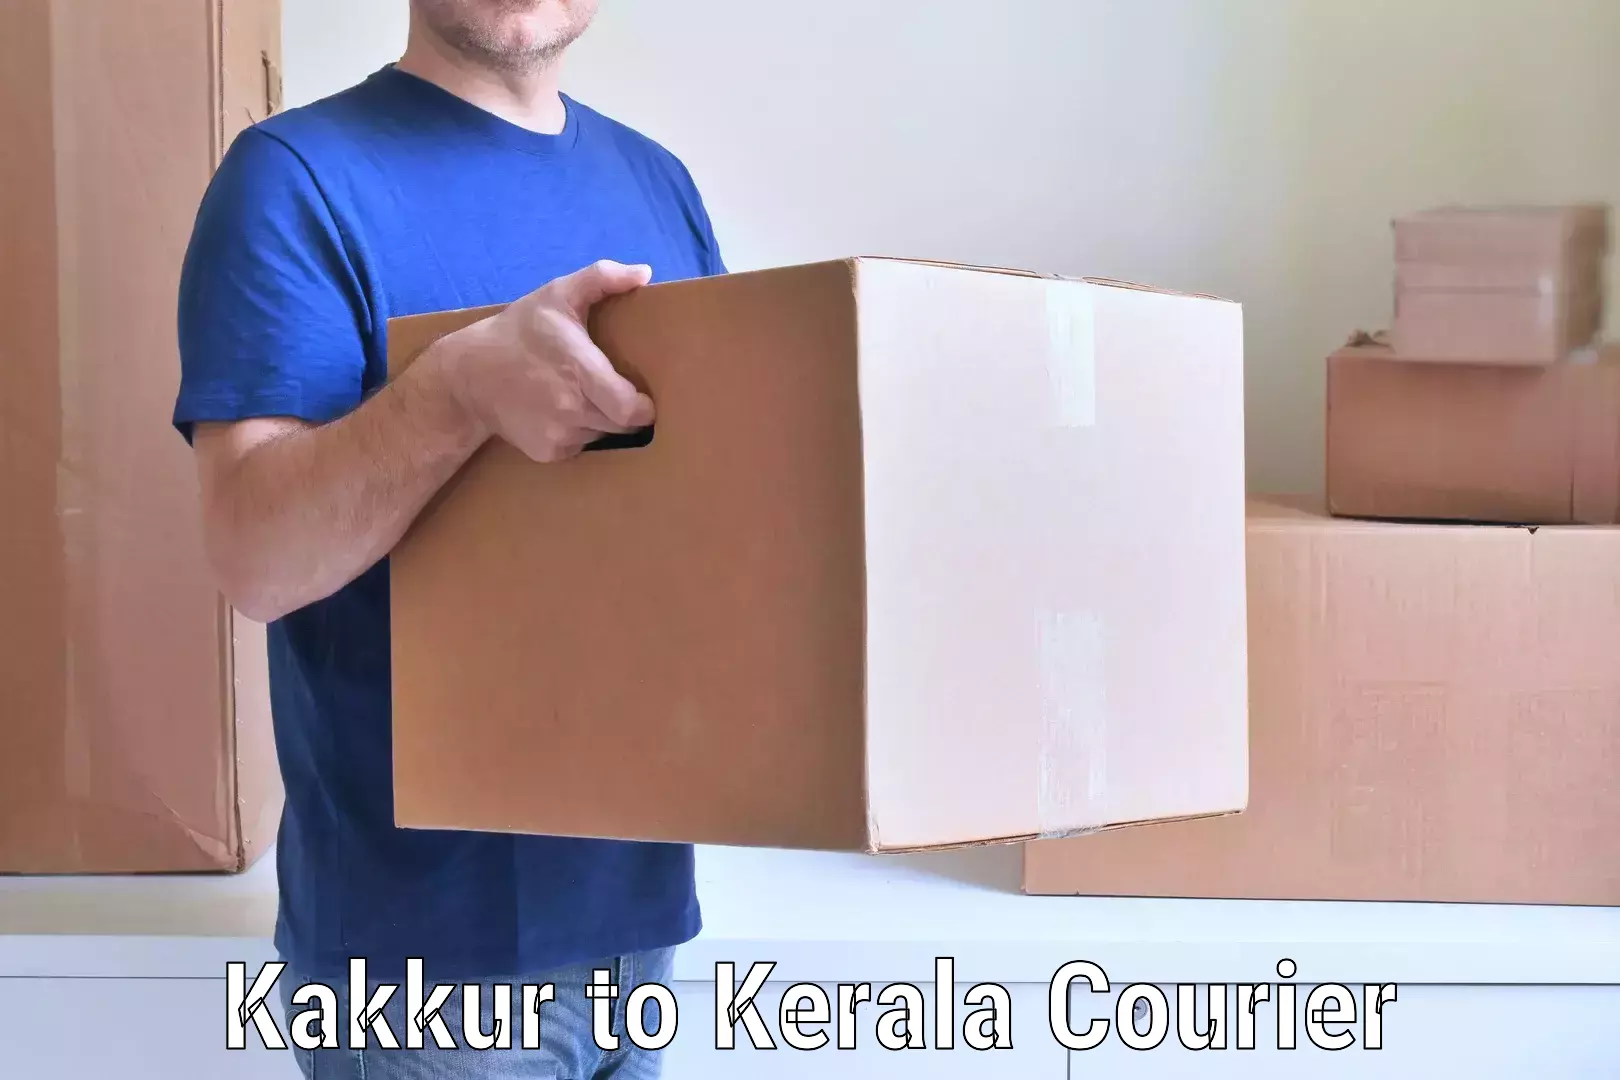 Efficient home goods movers Kakkur to Olavakkot